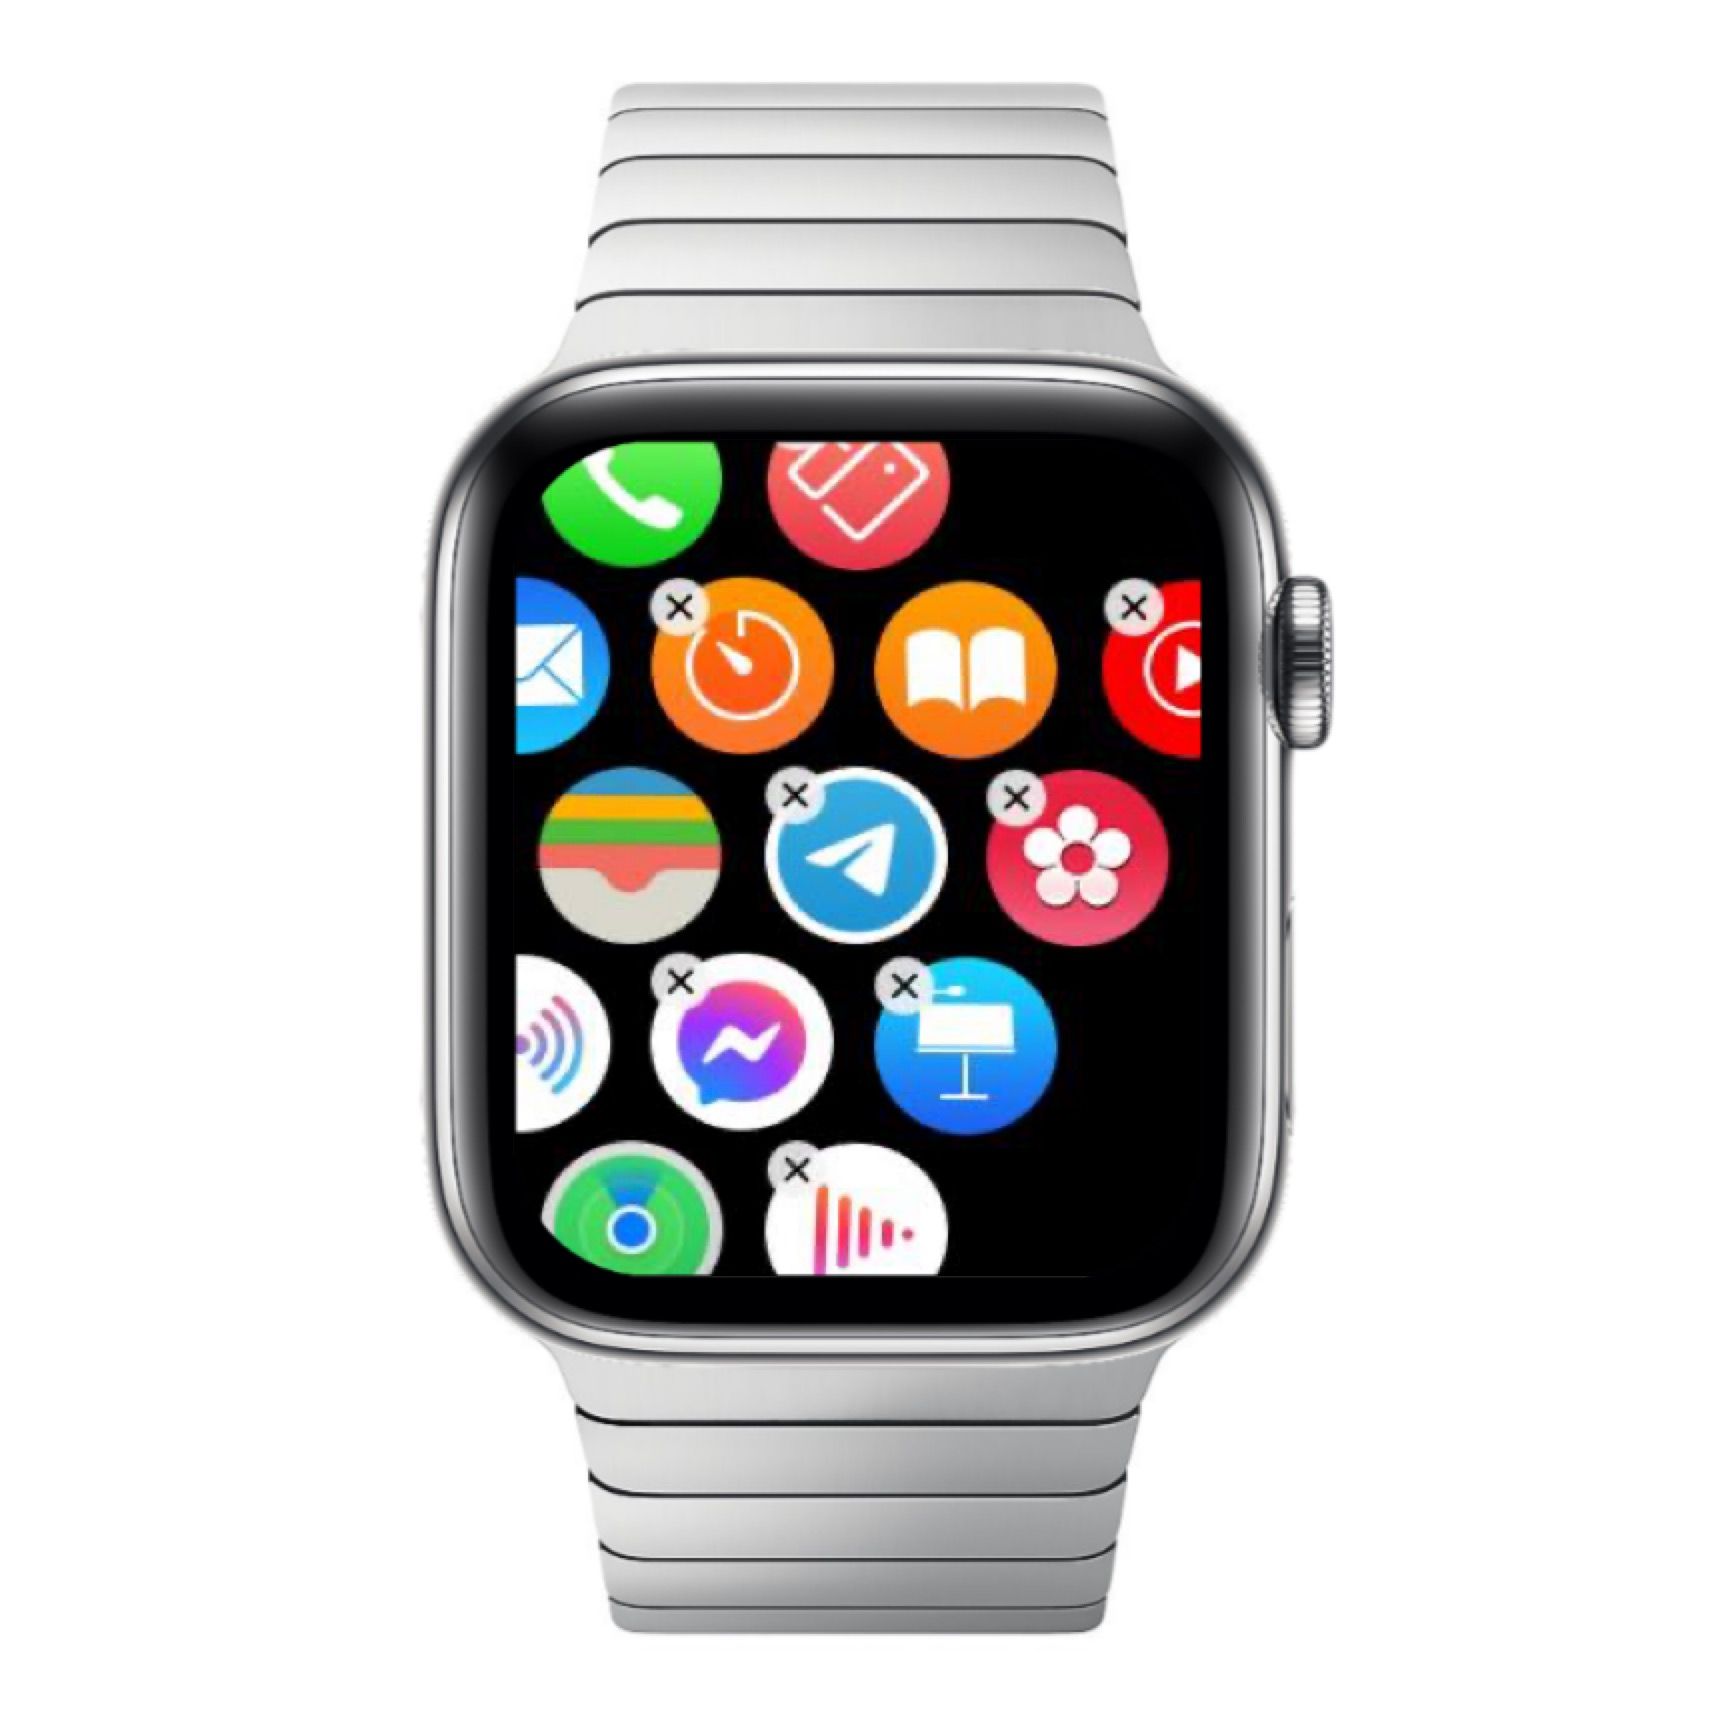 delete apps on Apple Watch